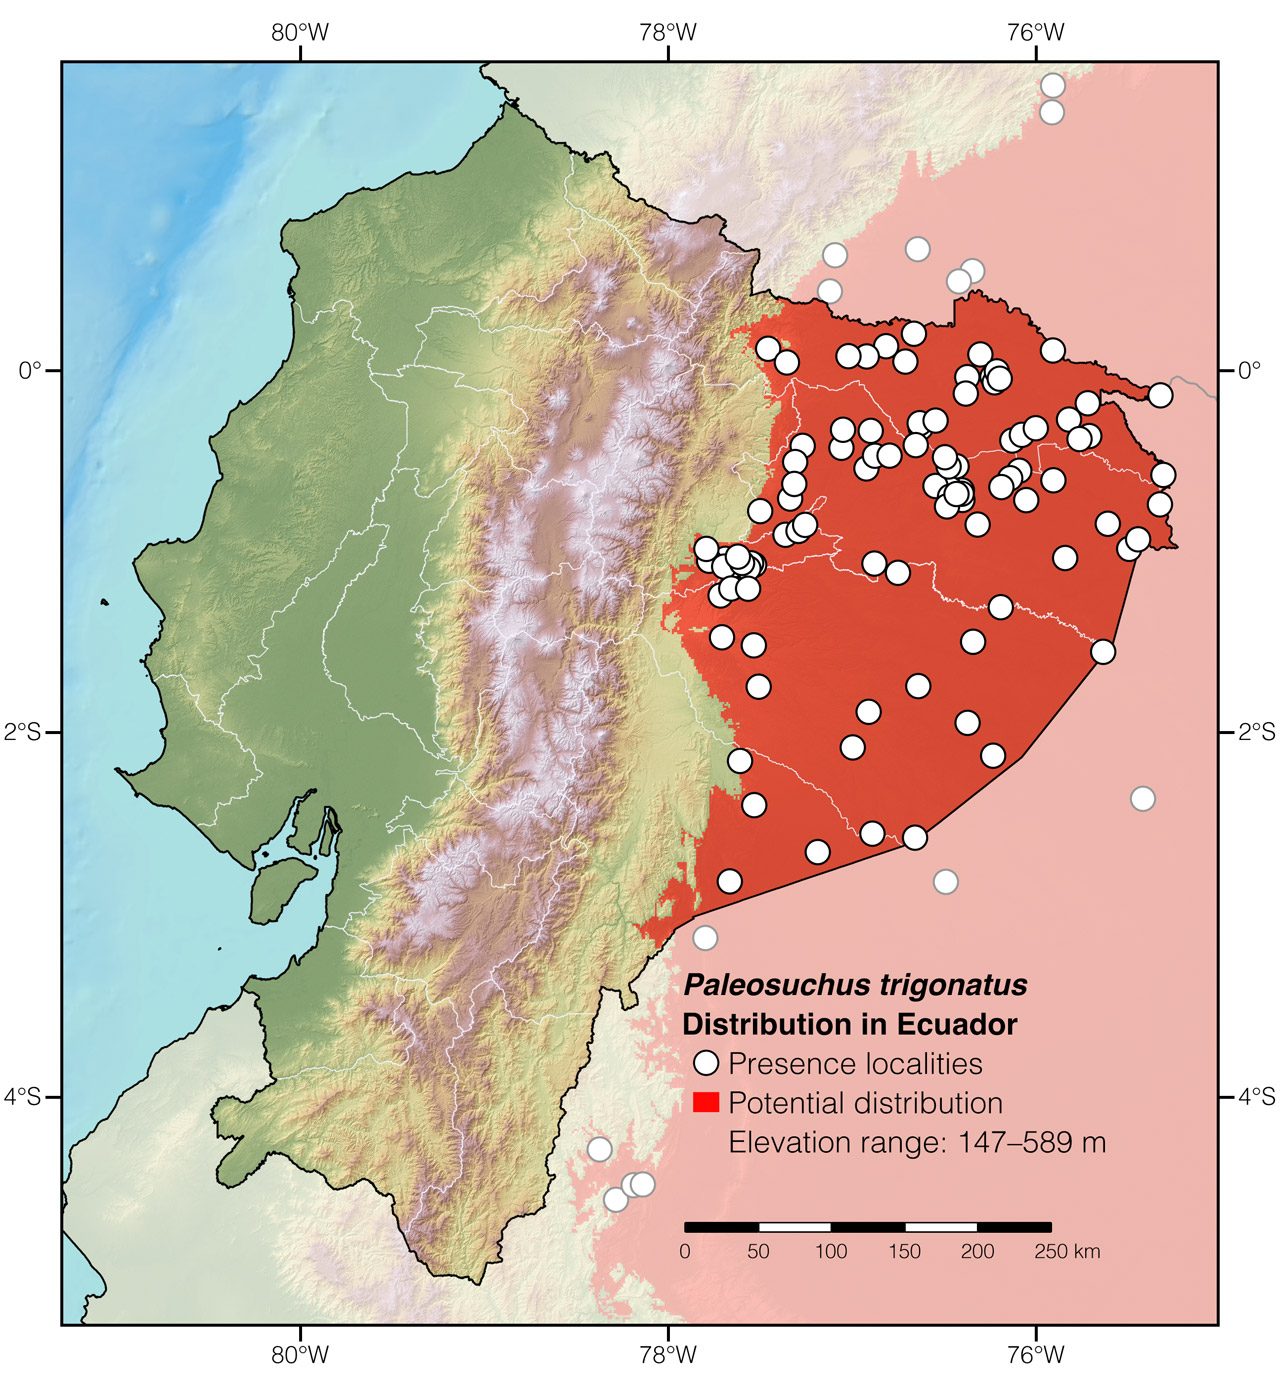 Distribution of Paleosuchus trigonatus in Ecuador